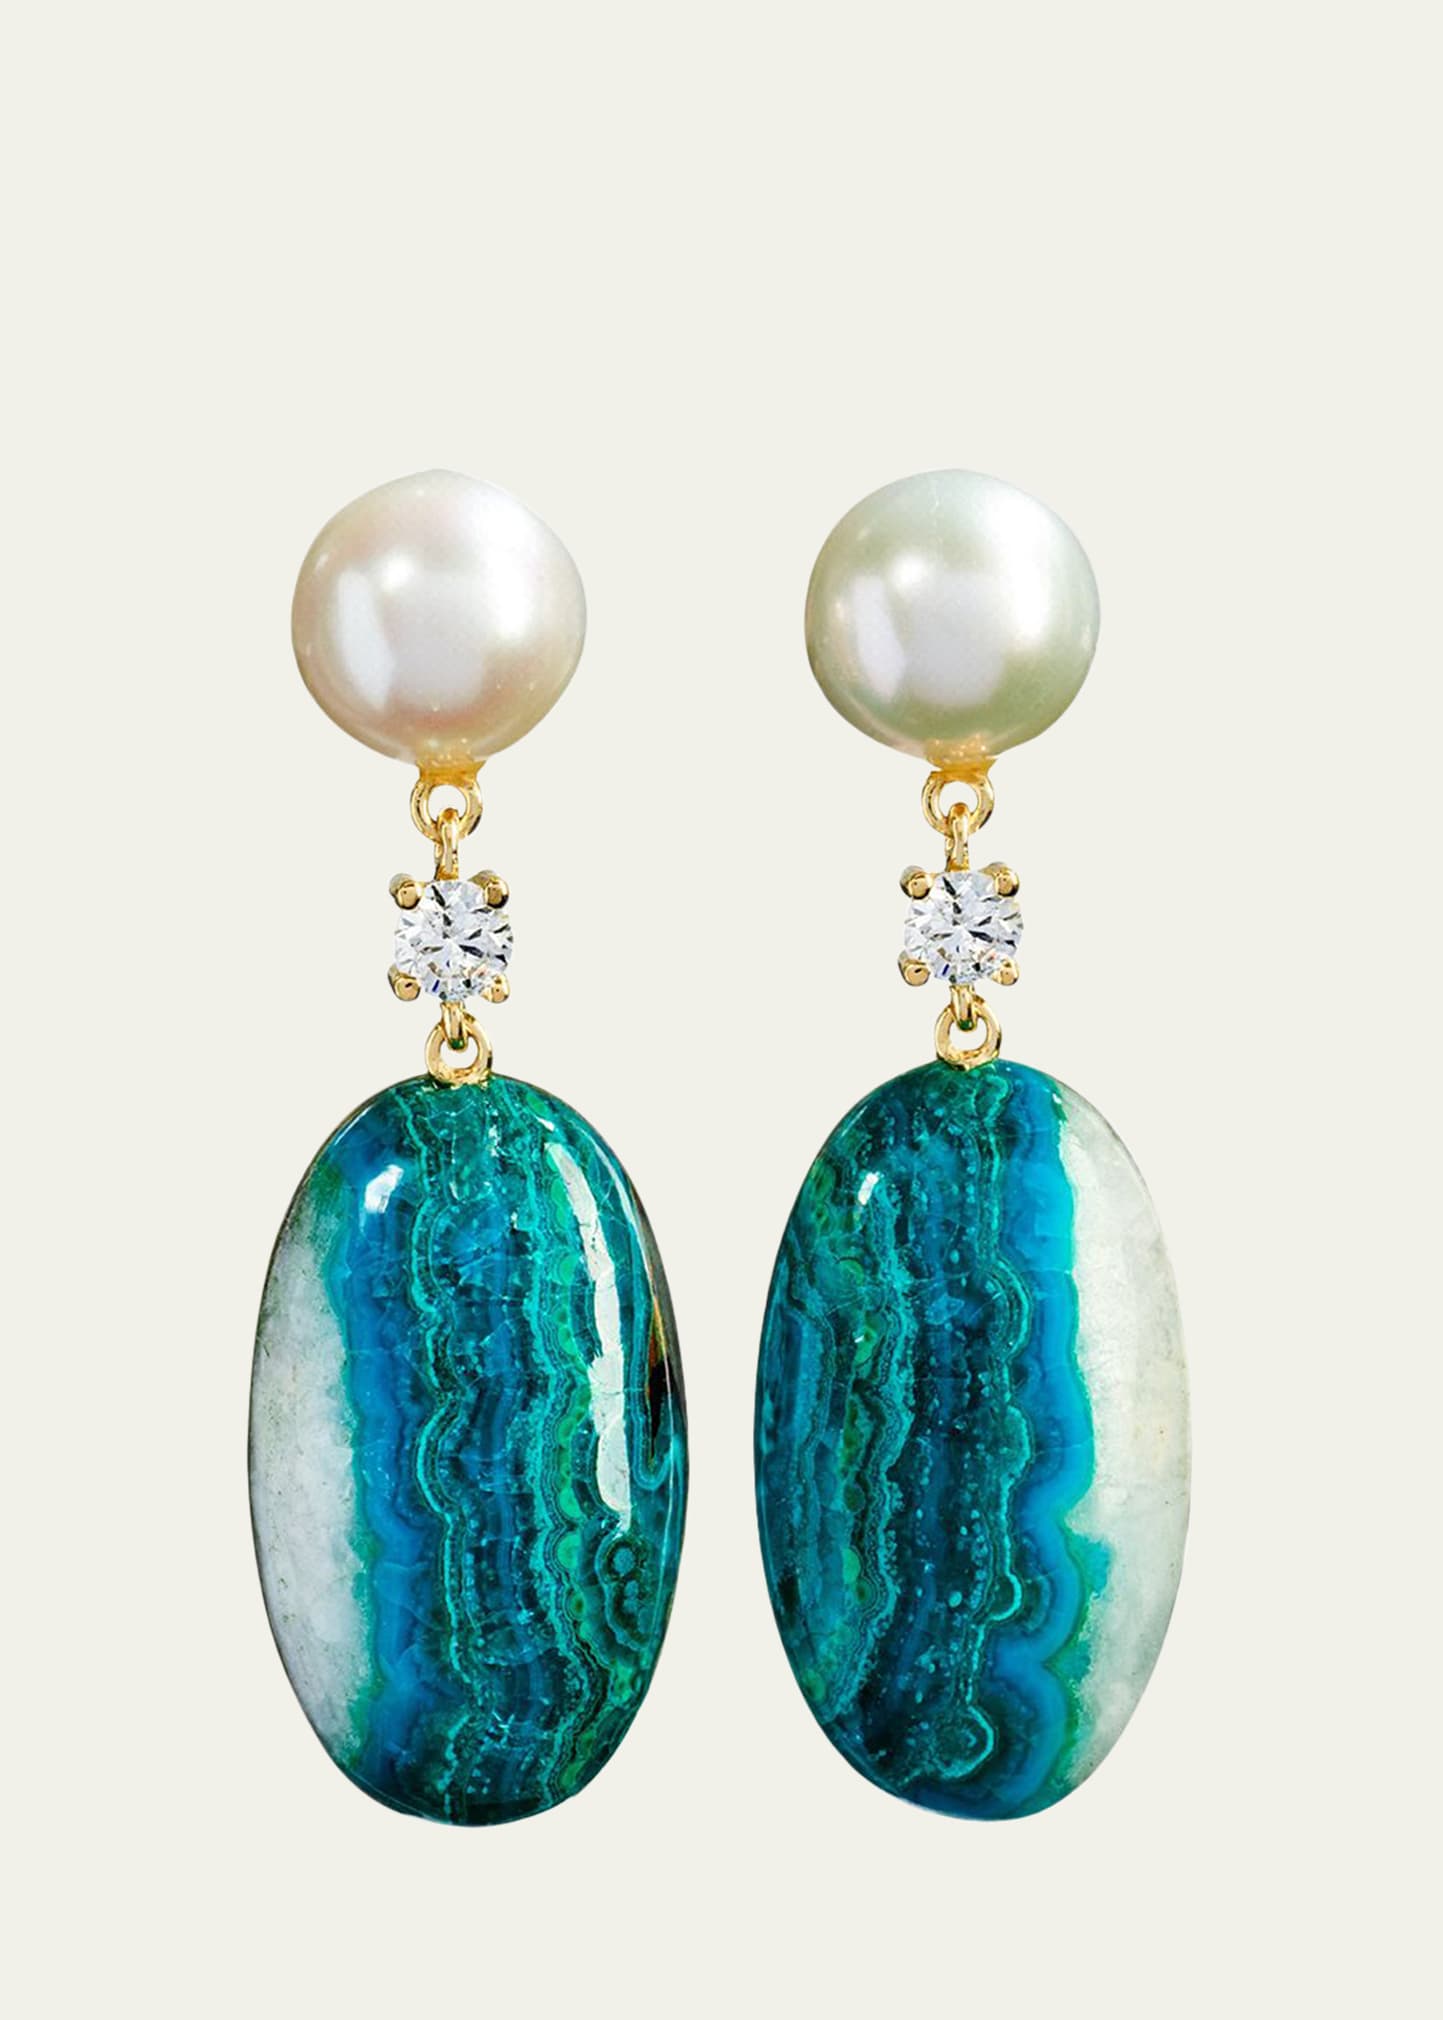 Jan Leslie 18k Bespoke 2-Tier One-of-a-Kind Luxury Earrings w/ Pearl, Chrysocolla Quartz Malachite & Diamonds